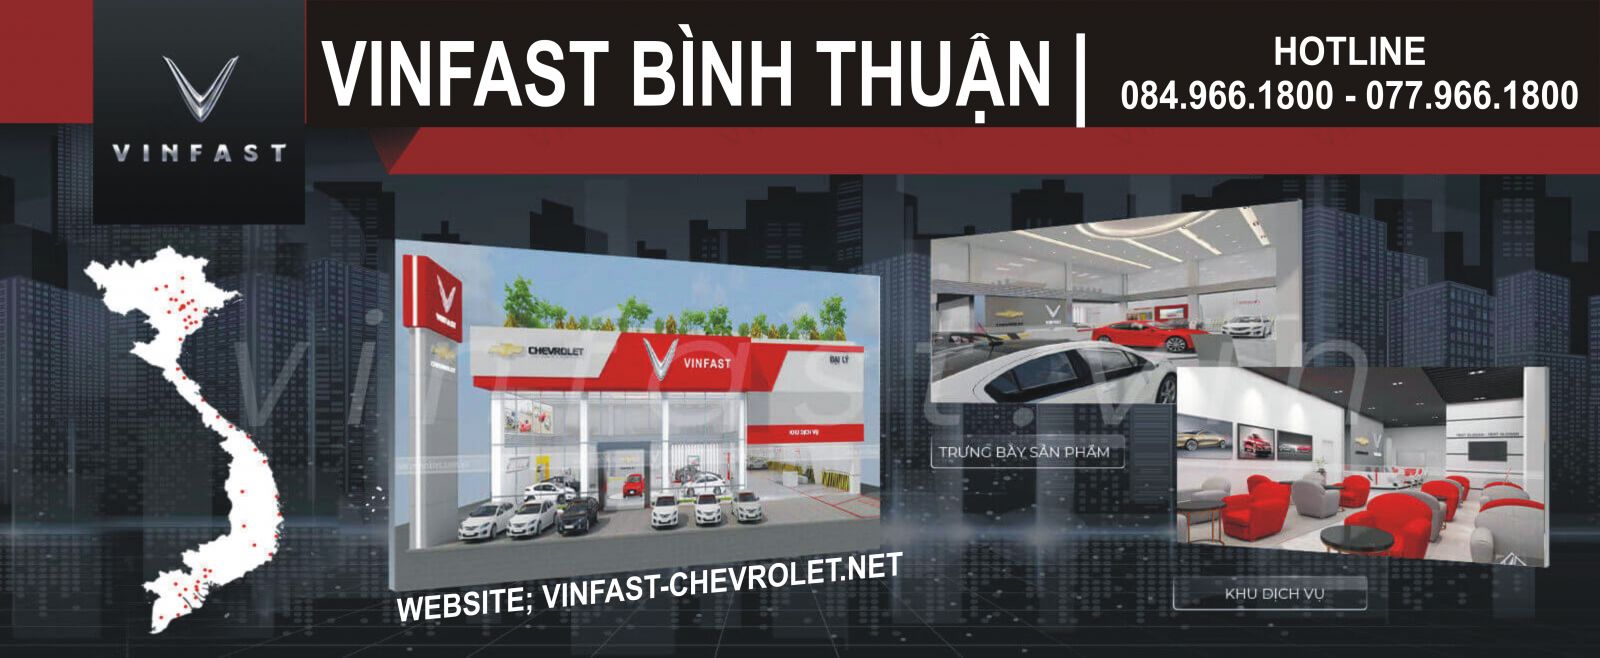 VinFast Binh Thuan